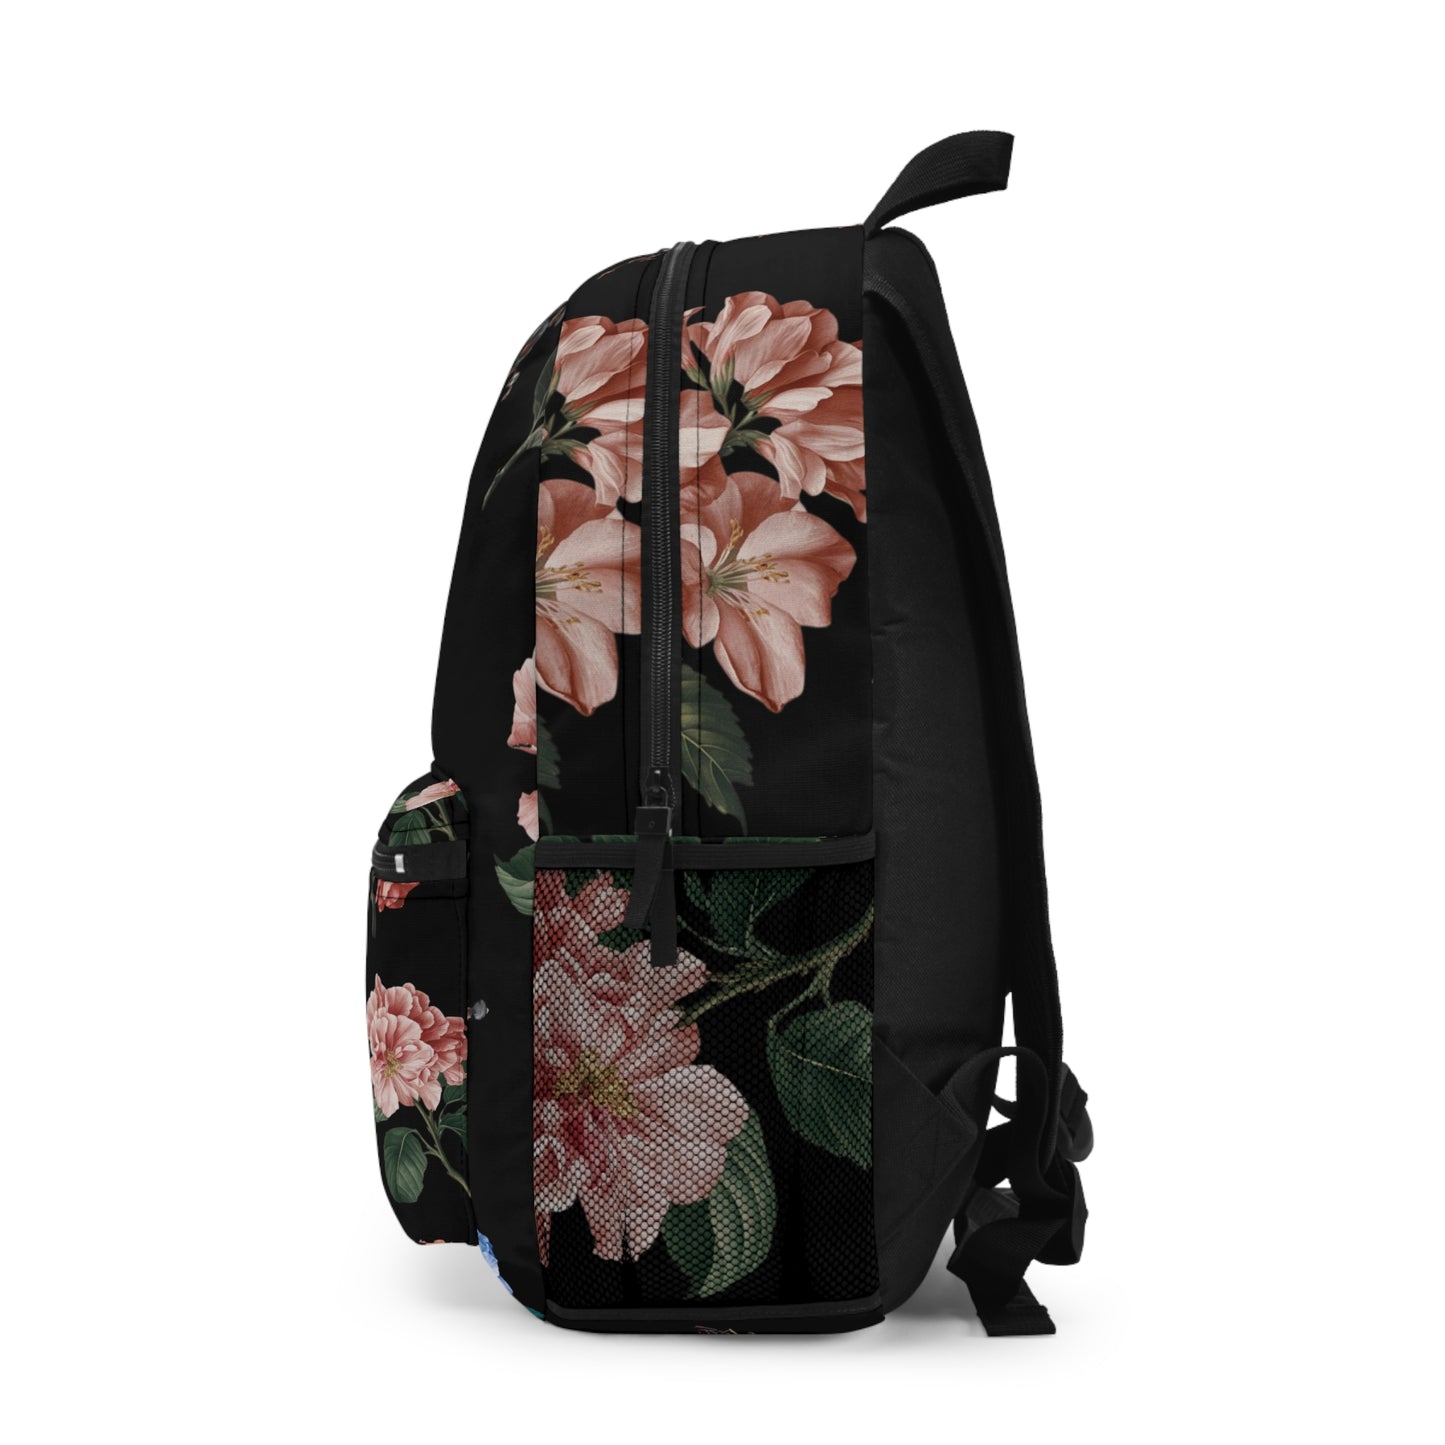 Botanicals on Black - Backpack